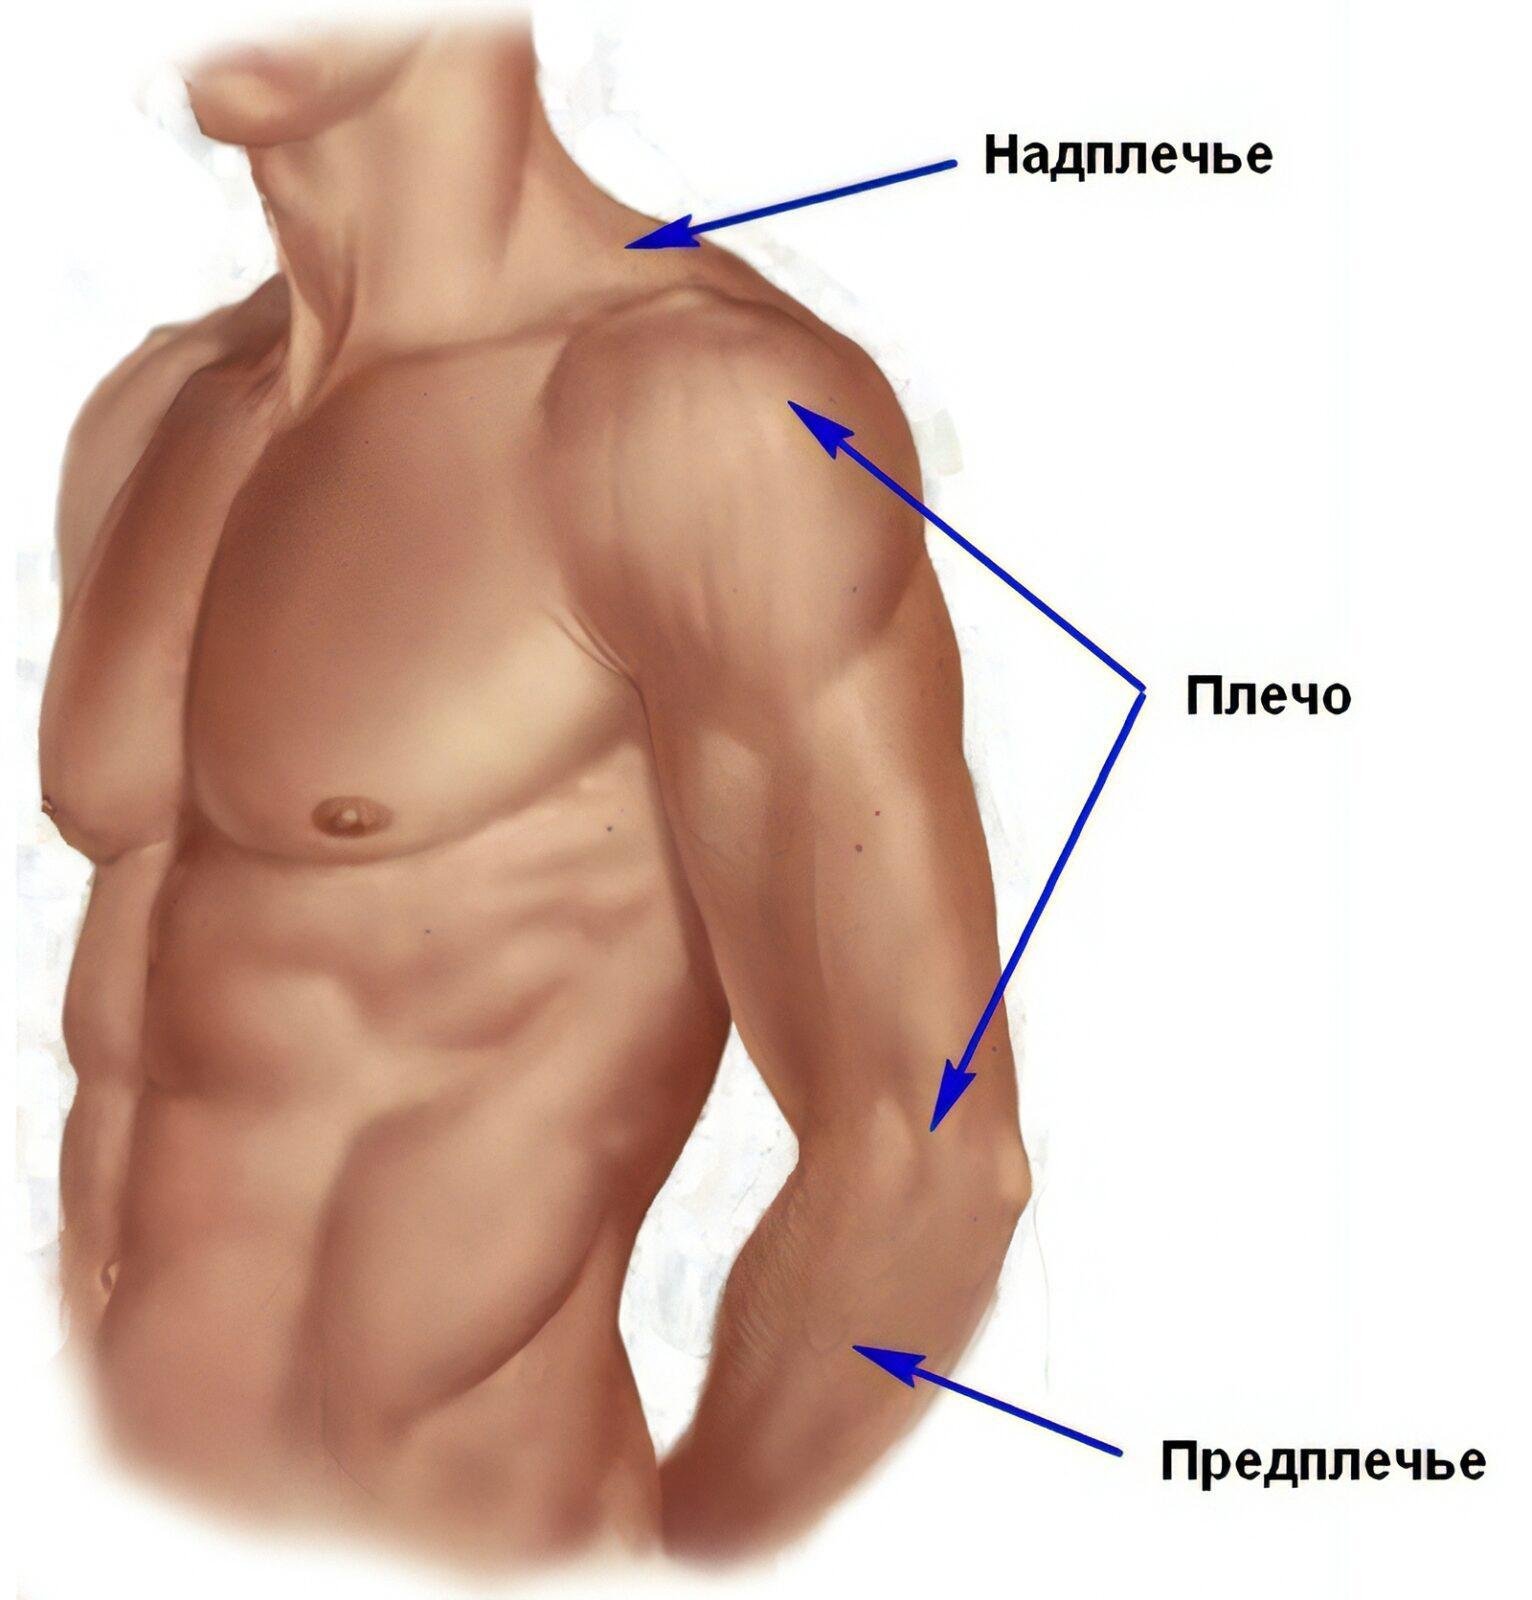 Верхняя часть человека. Анатомия плечо и предплечье. Где плечо а где предплечье у человека. Анатомия предплечья человека. Части руки человека названия.